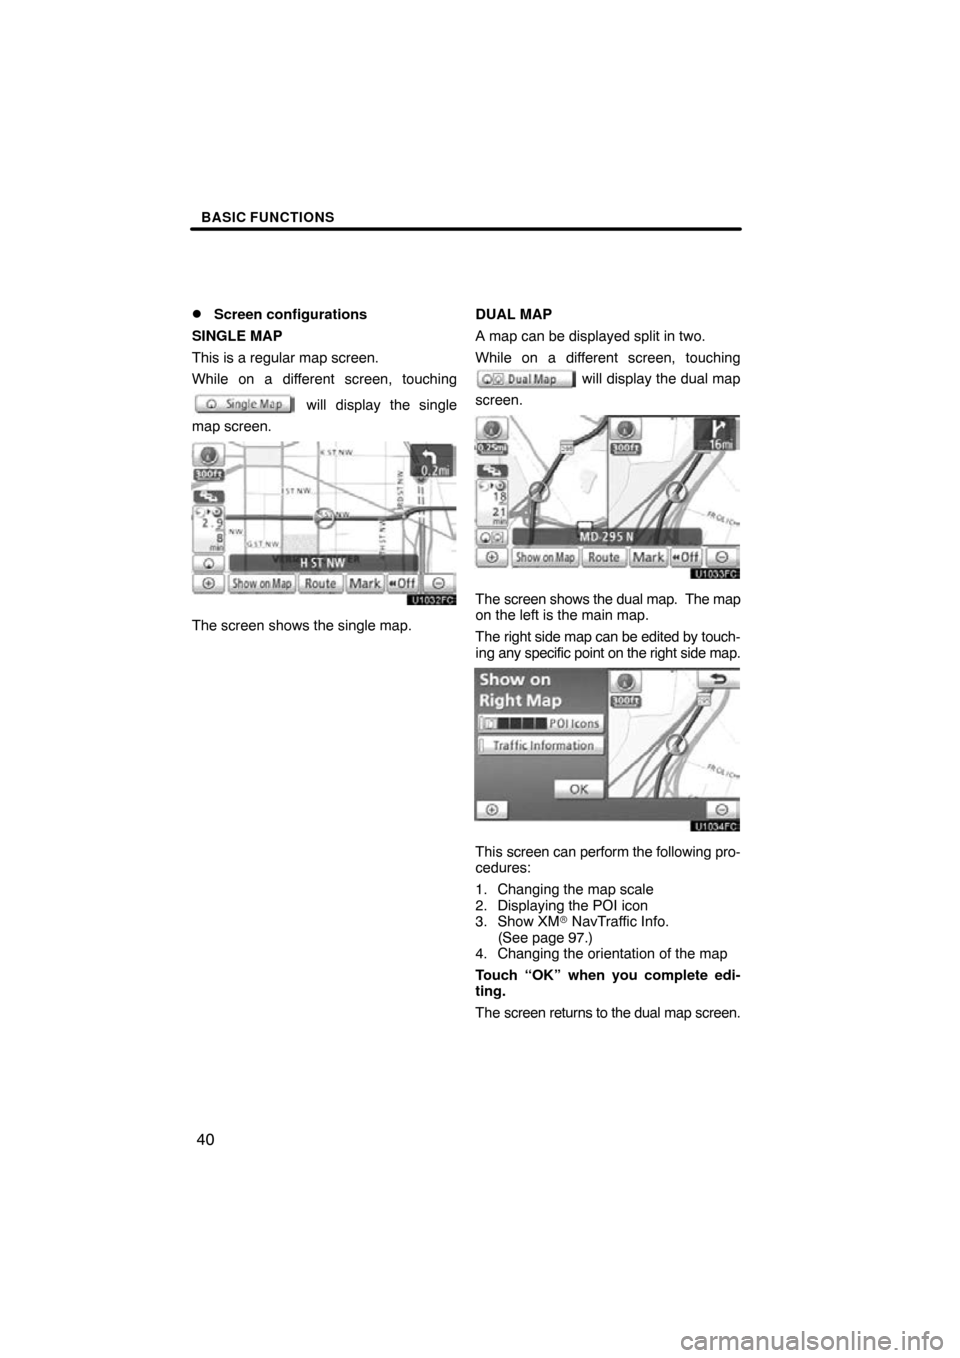 TOYOTA PRIUS 2011 3.G Navigation Manual BASIC FUNCTIONS
40

Screen configurations
SINGLE MAP
This is a regular map screen.
While on a different screen, touching
 will display the single
map screen.
The screen shows the single map. DUAL MAP